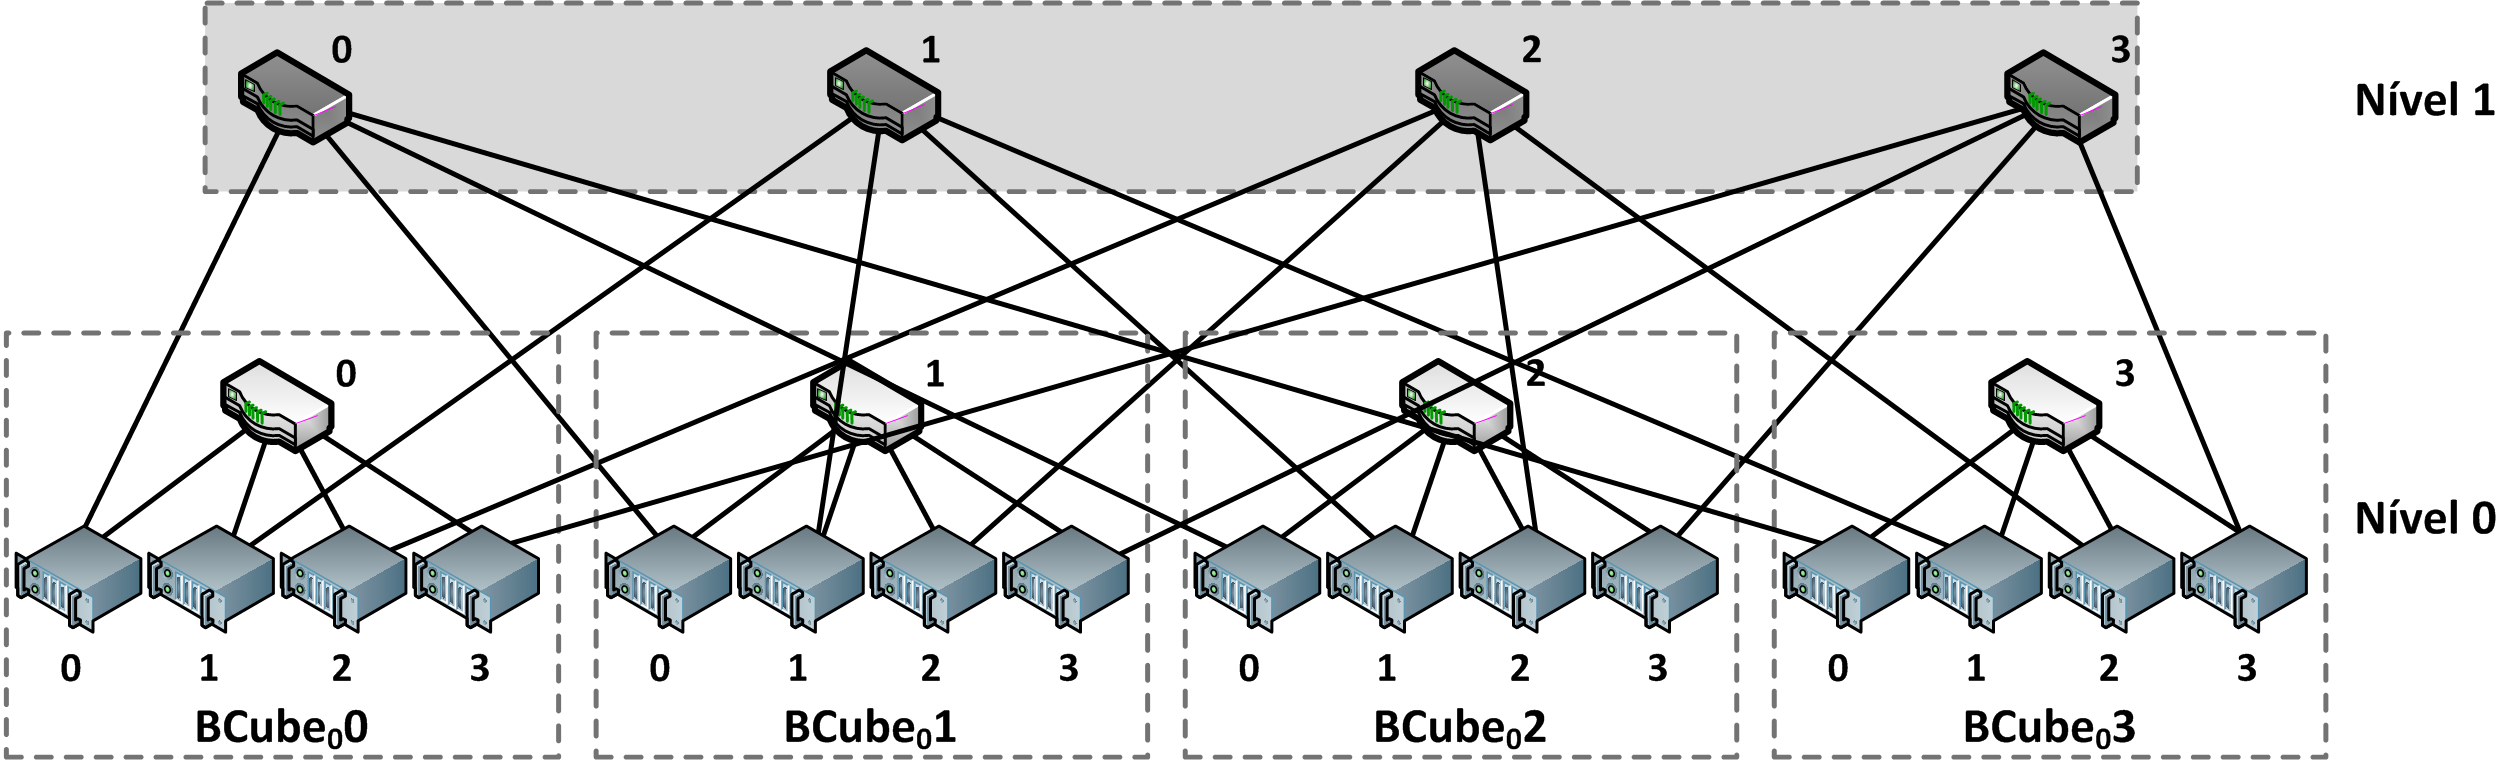 Figura 1.10. Um exemplo de BCube 1 com n=4. O BCube provê múltiplos caminhos paralelos e curtos para permitir comunicações servidor-para-servidor.